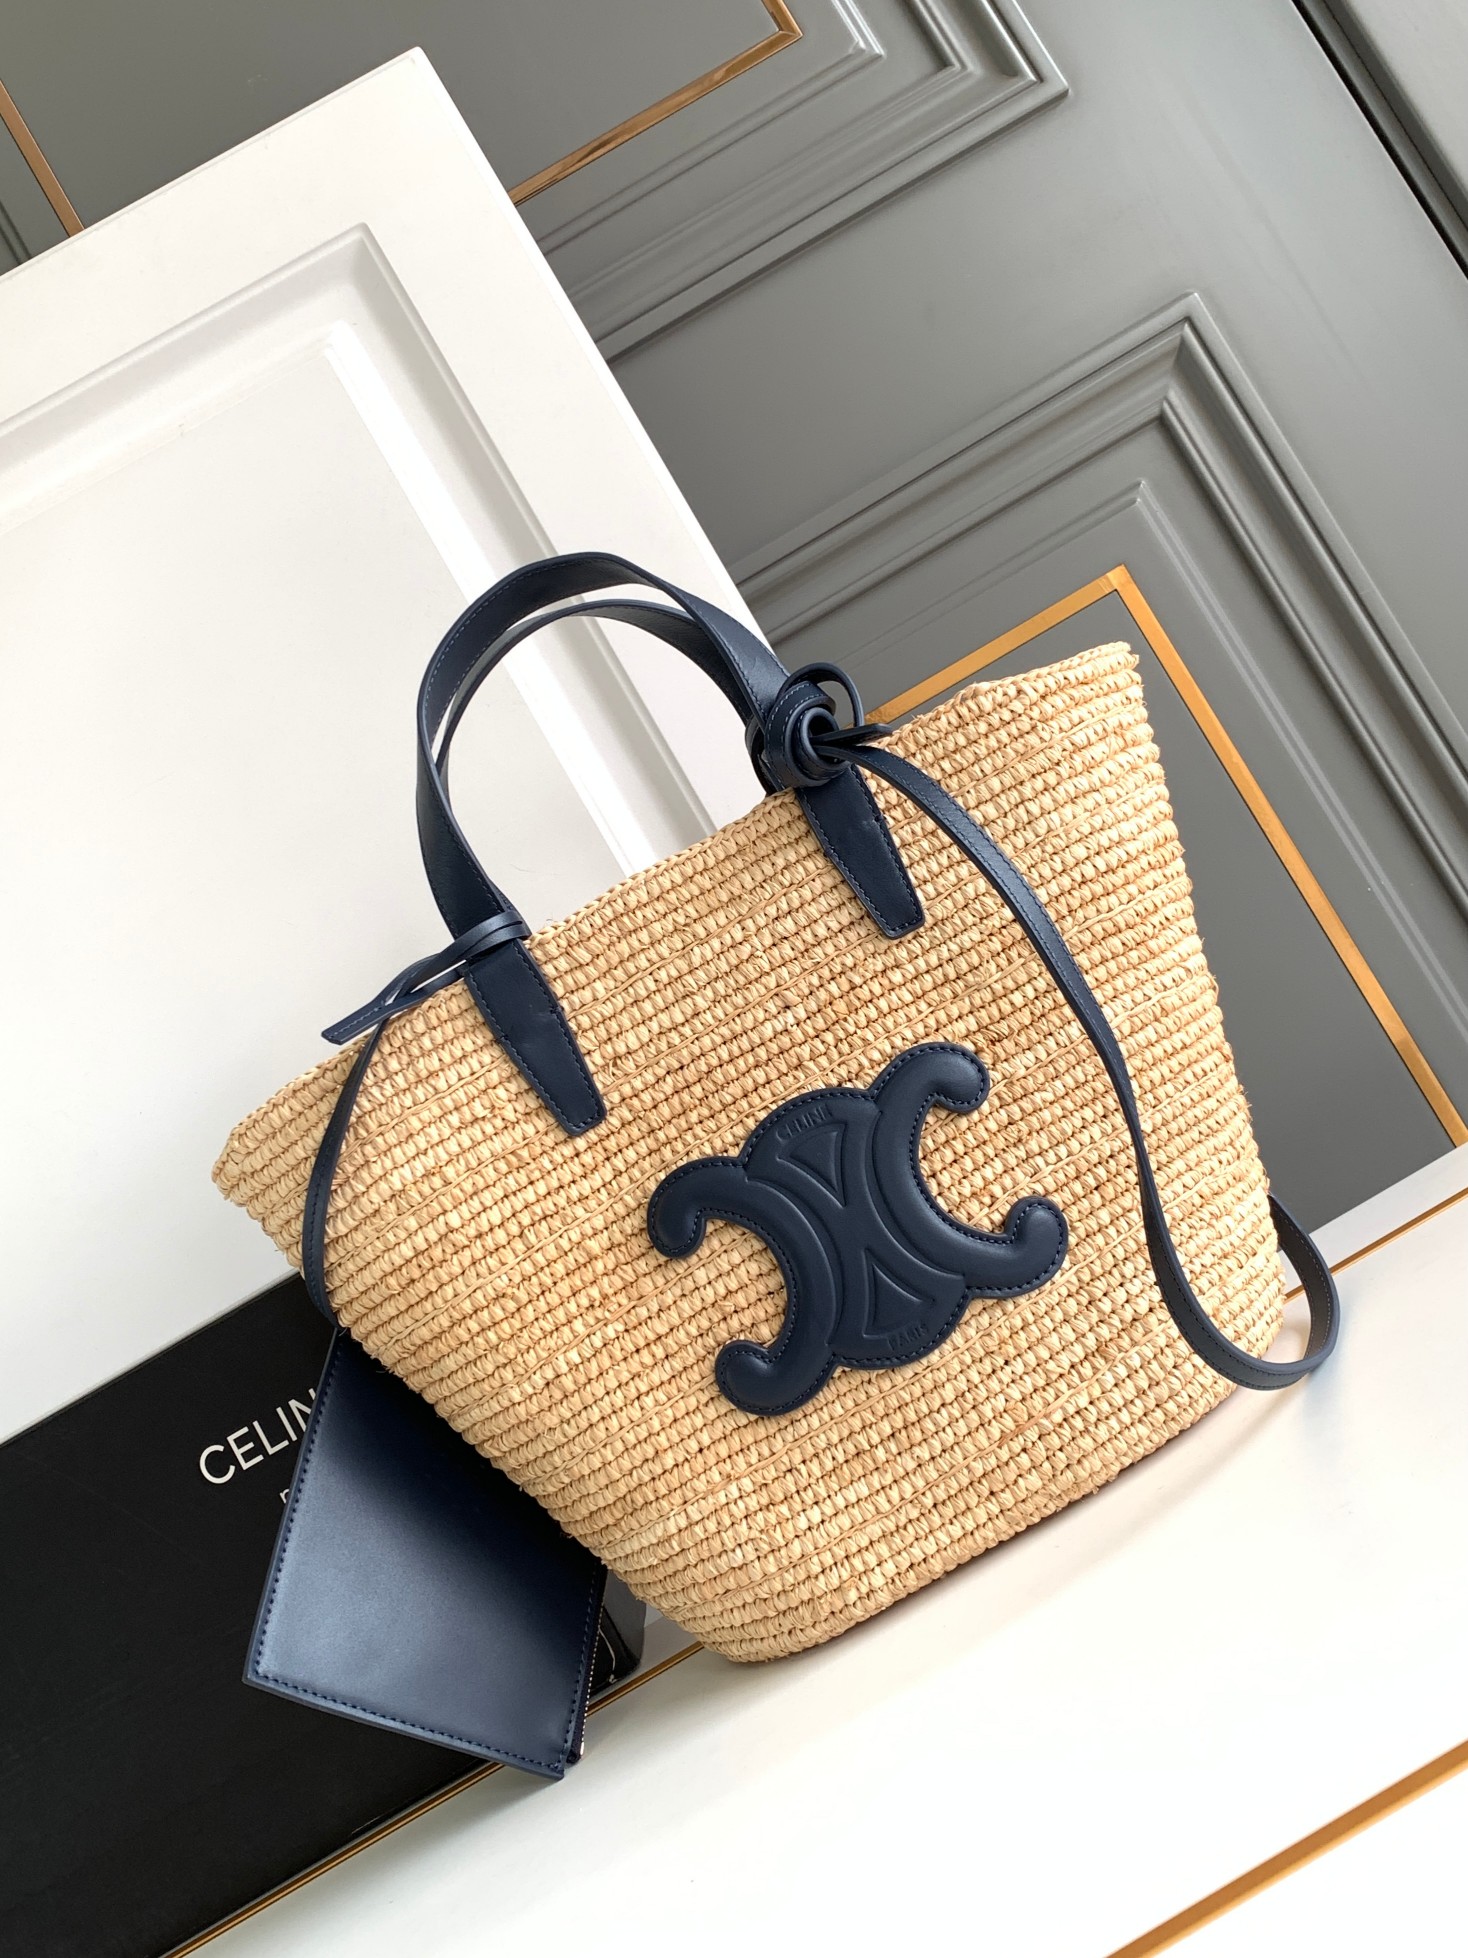 Top Perfect Fake
 Celine Taschen Handtaschen Blau Dunkelblau Gold Weben Rindsleder Stroh gewebt Sommerkollektion Vintage